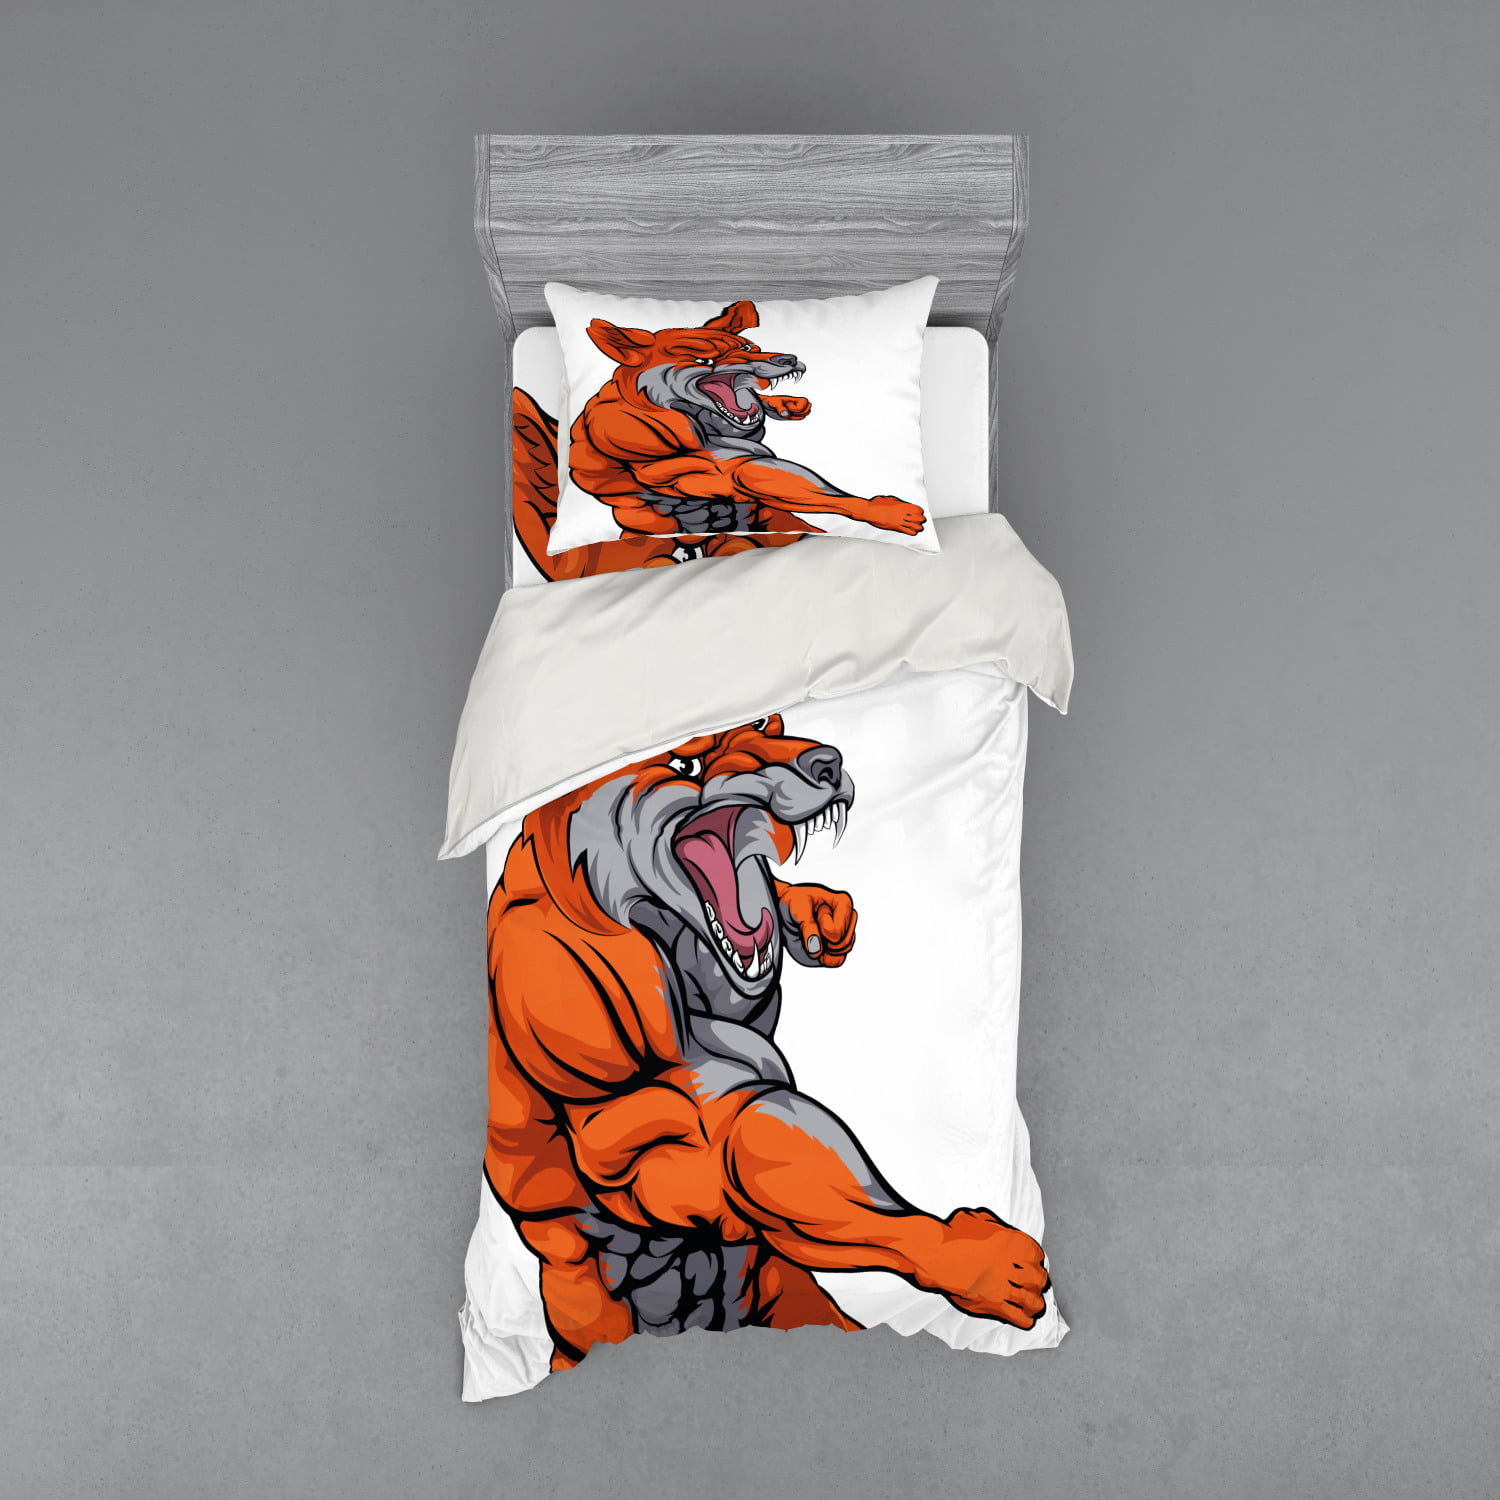 1 Comforter Cover 2Pillow Shams Quilt Bedding Set Full Size Fox Bedding Set- Muscular Sports Fox Mascot